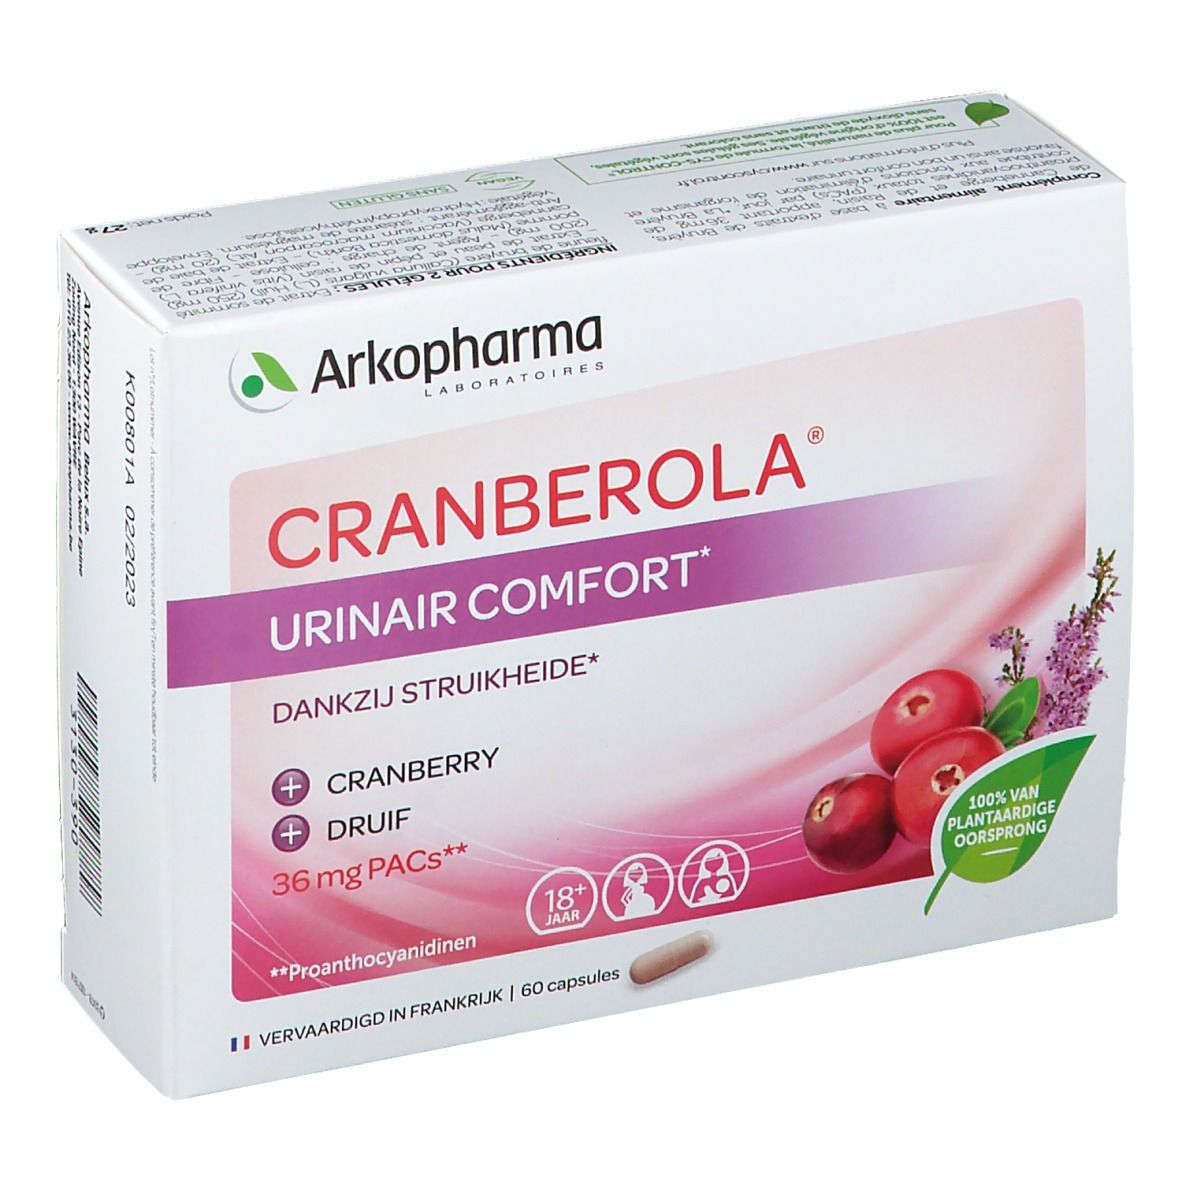 Cranberola® Confort Urinaire